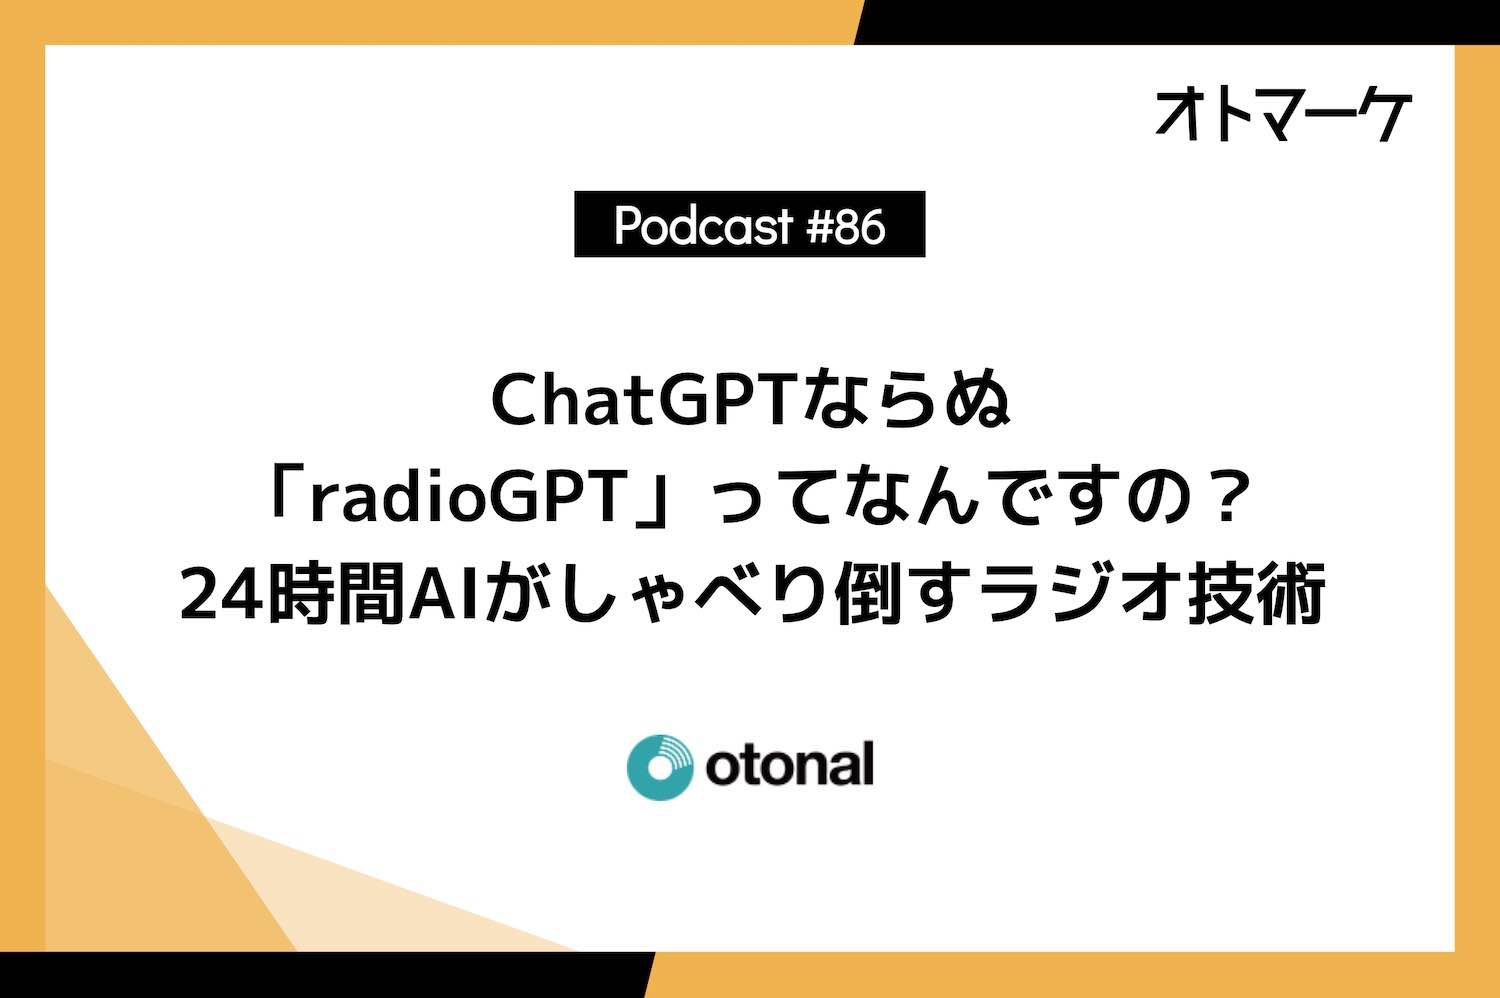 ChatGPTならぬ「radioGPT」ってなんですの？ 24時間AIがしゃべり倒すラジオ技術